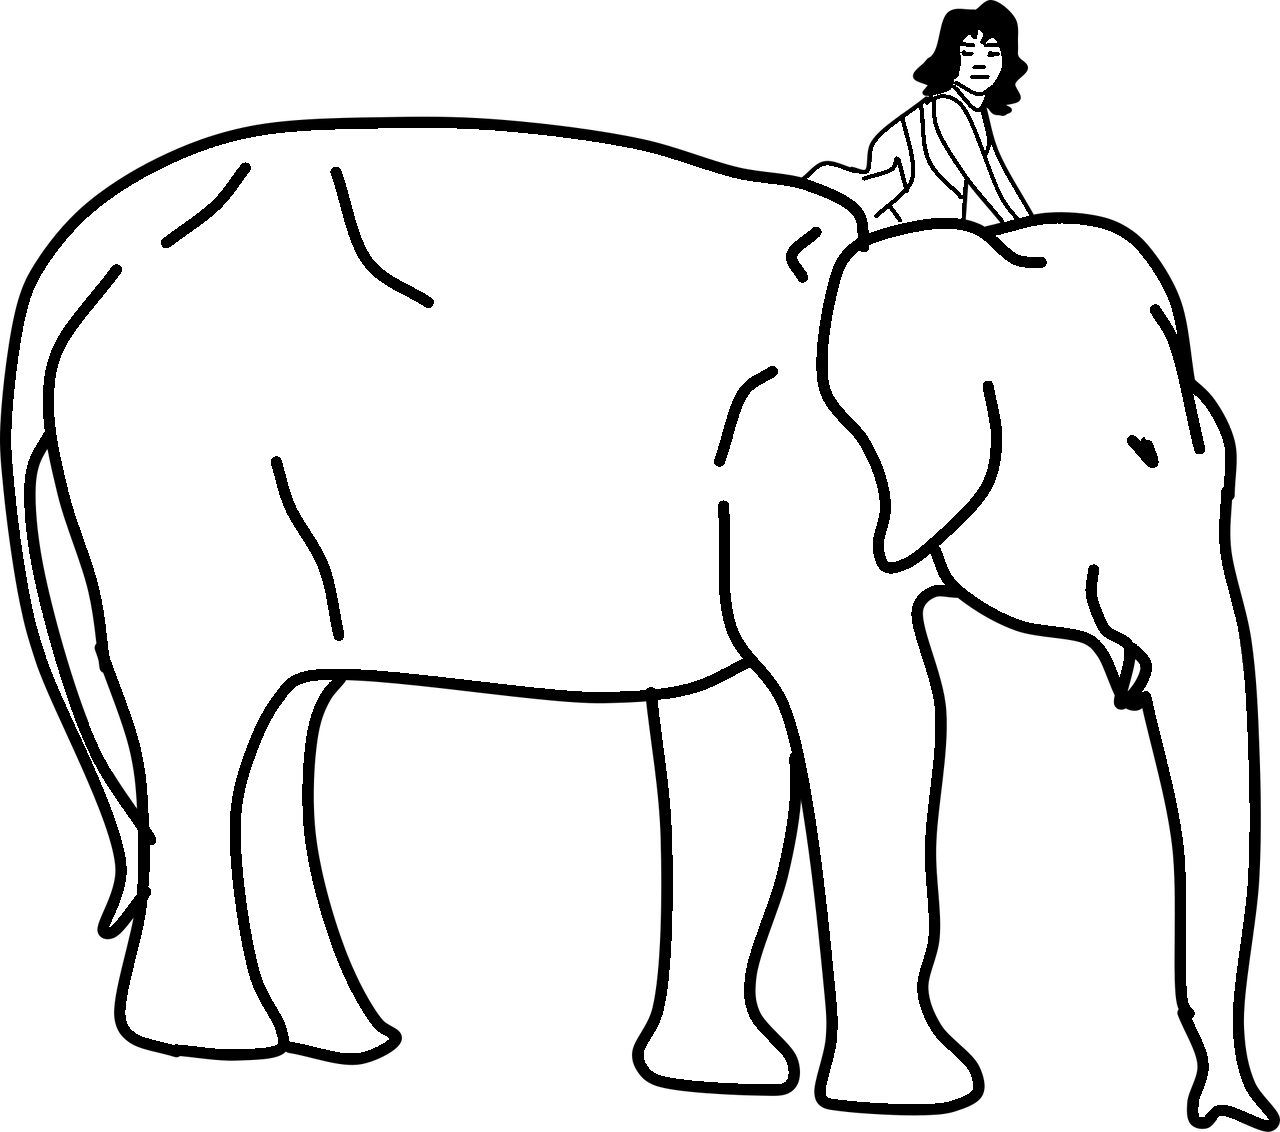 Dibujo para colorear de elefante con mujer